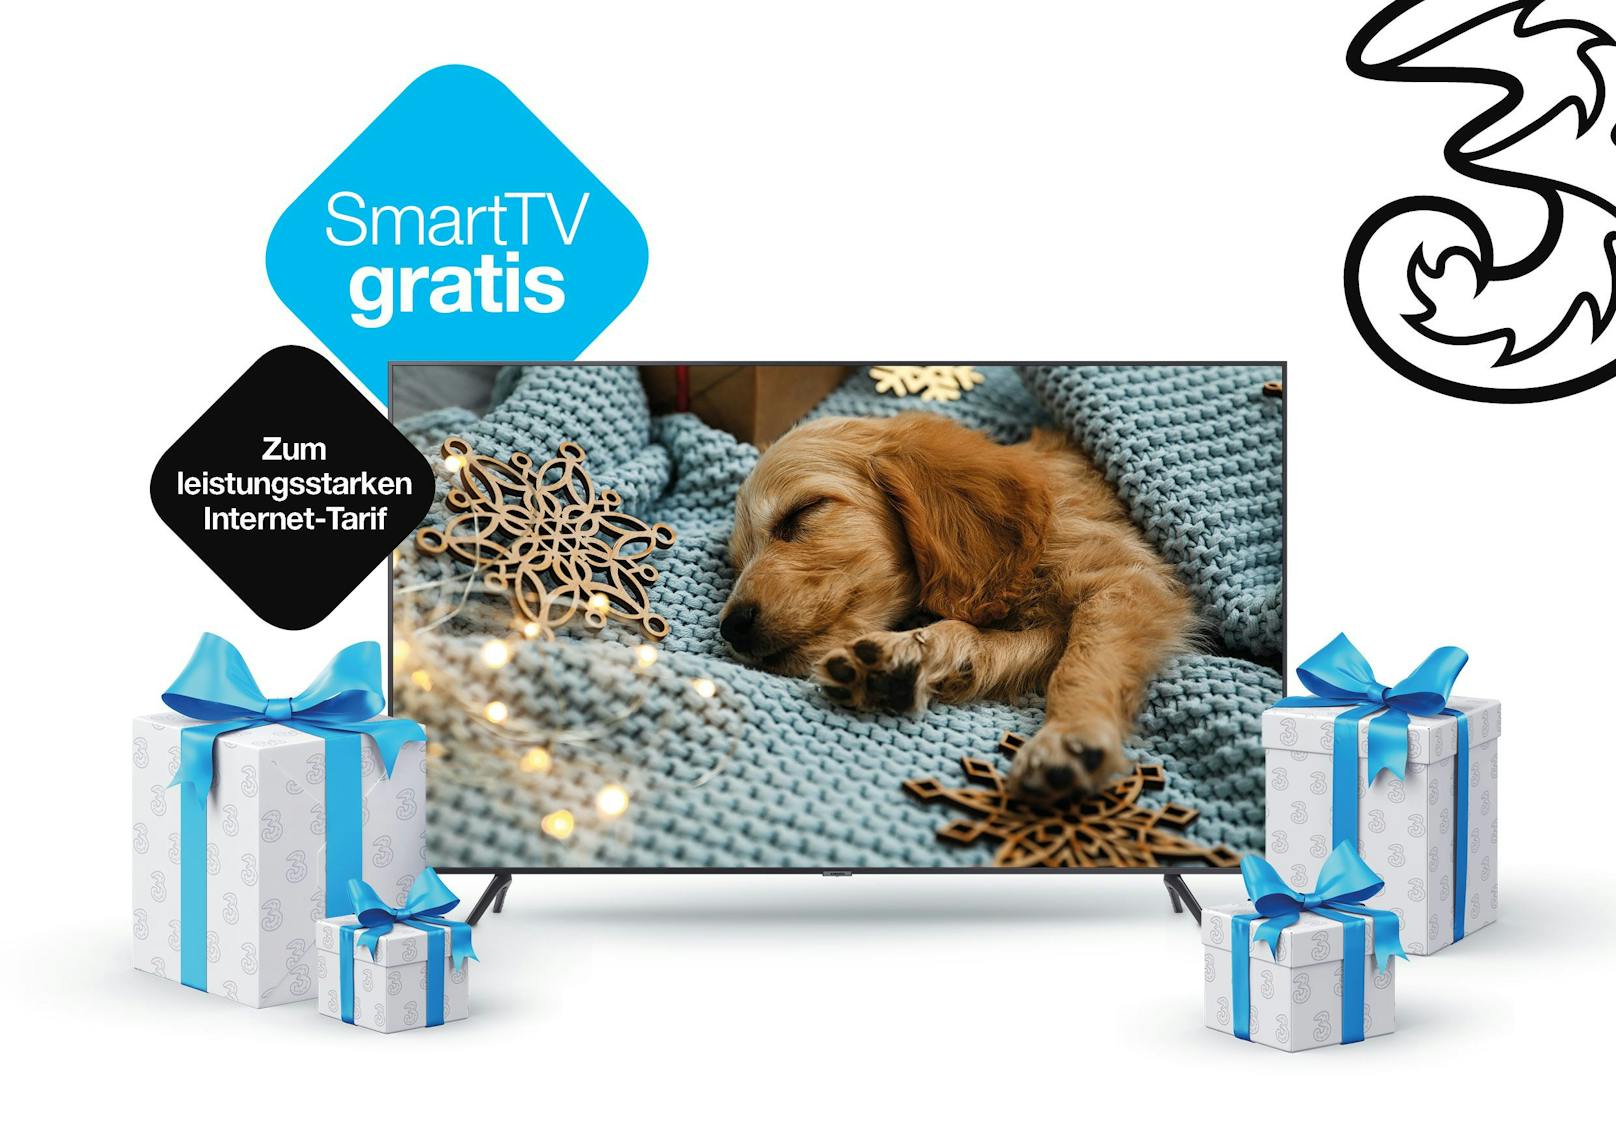 Drei zu Weihnachten: Gratis 50 Zoll 4K SmartTV zum leistungsstarken Zuhause-Internet.